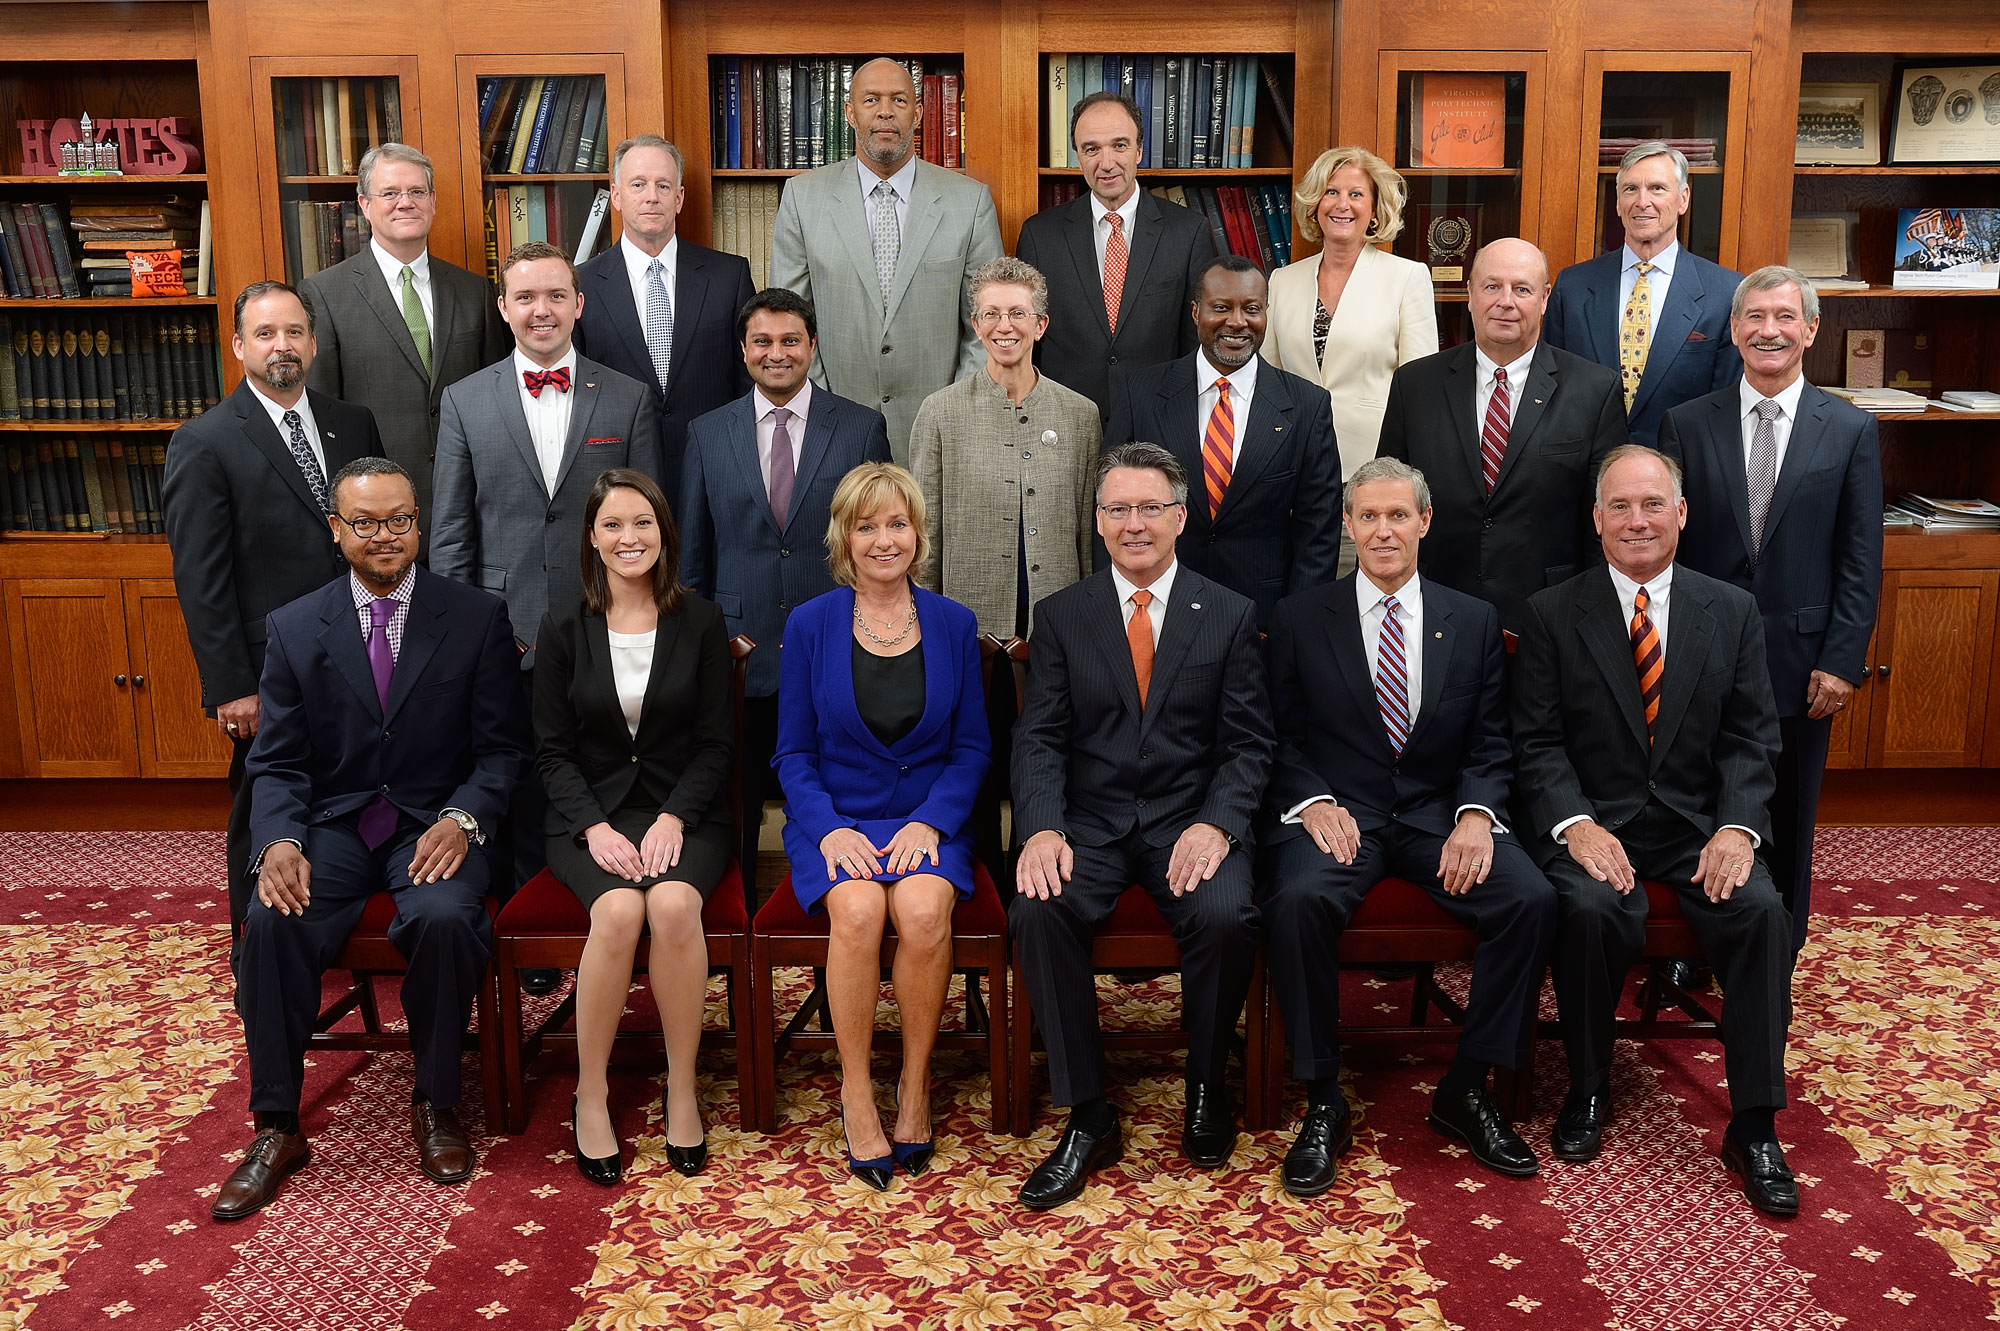 2014-15 Board of Visitors members